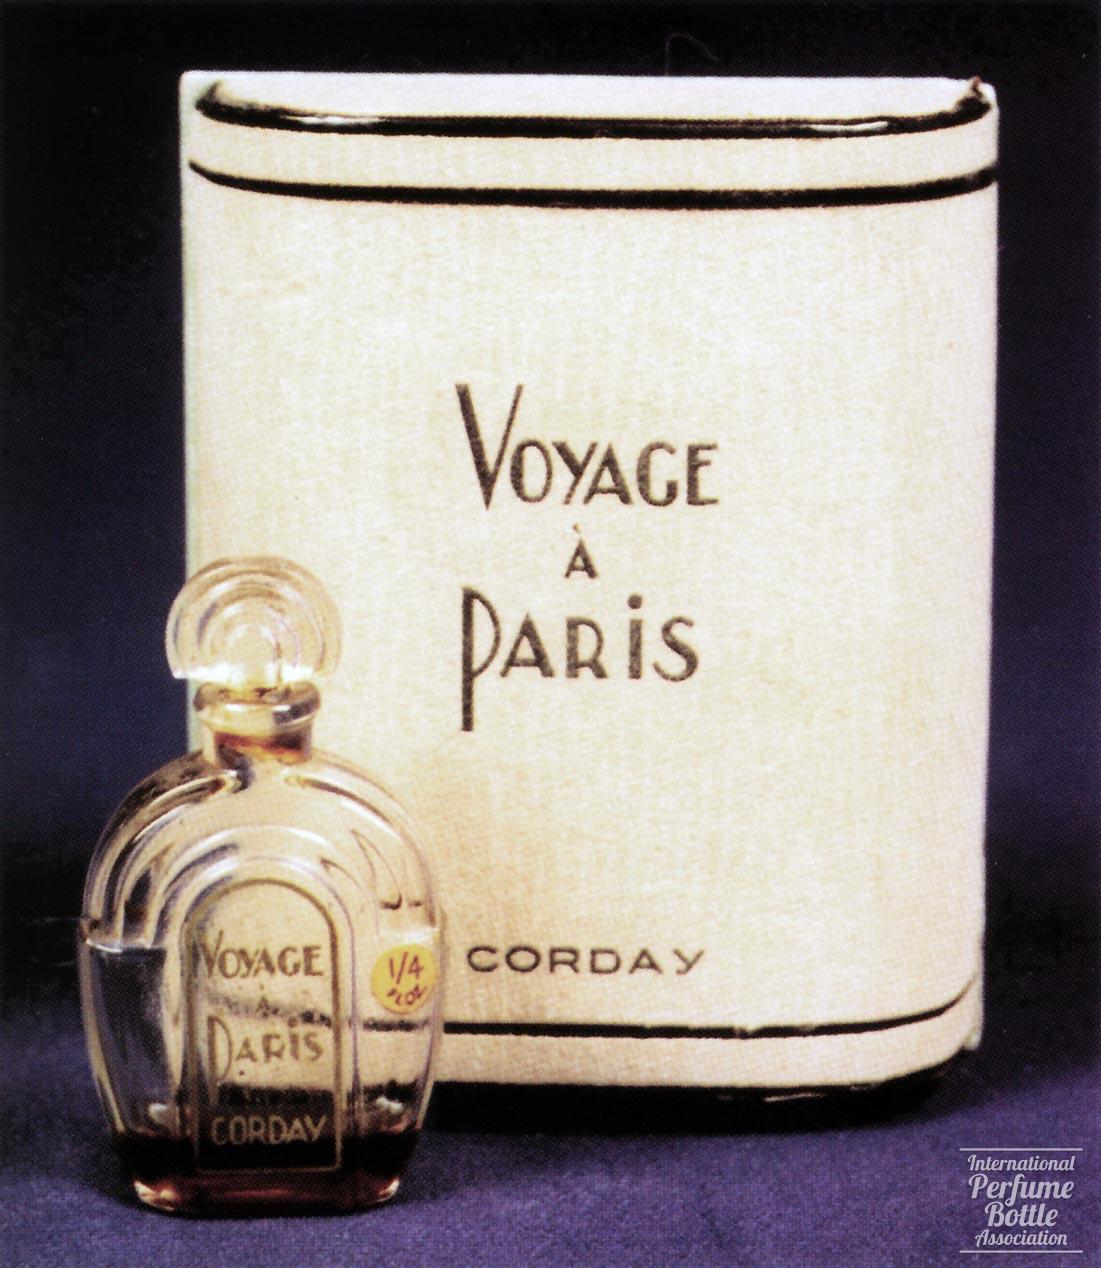 "Voyage á Paris" by Corday